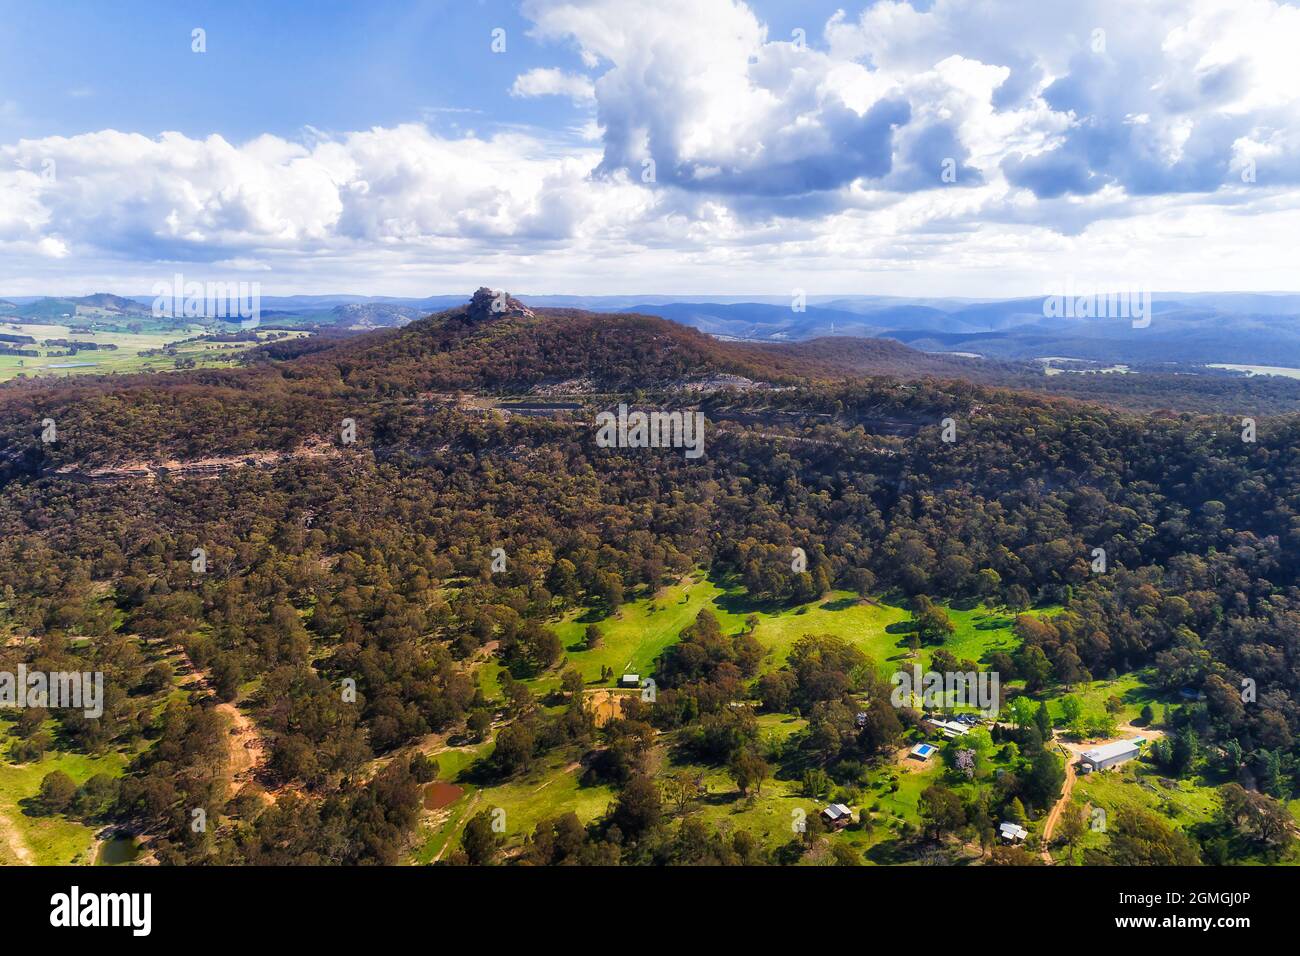 Pearsons guarda sull'autostrada Castlereagh nella valle di Capertee del NSW, Australia - paesaggio aereo panoramico. Foto Stock